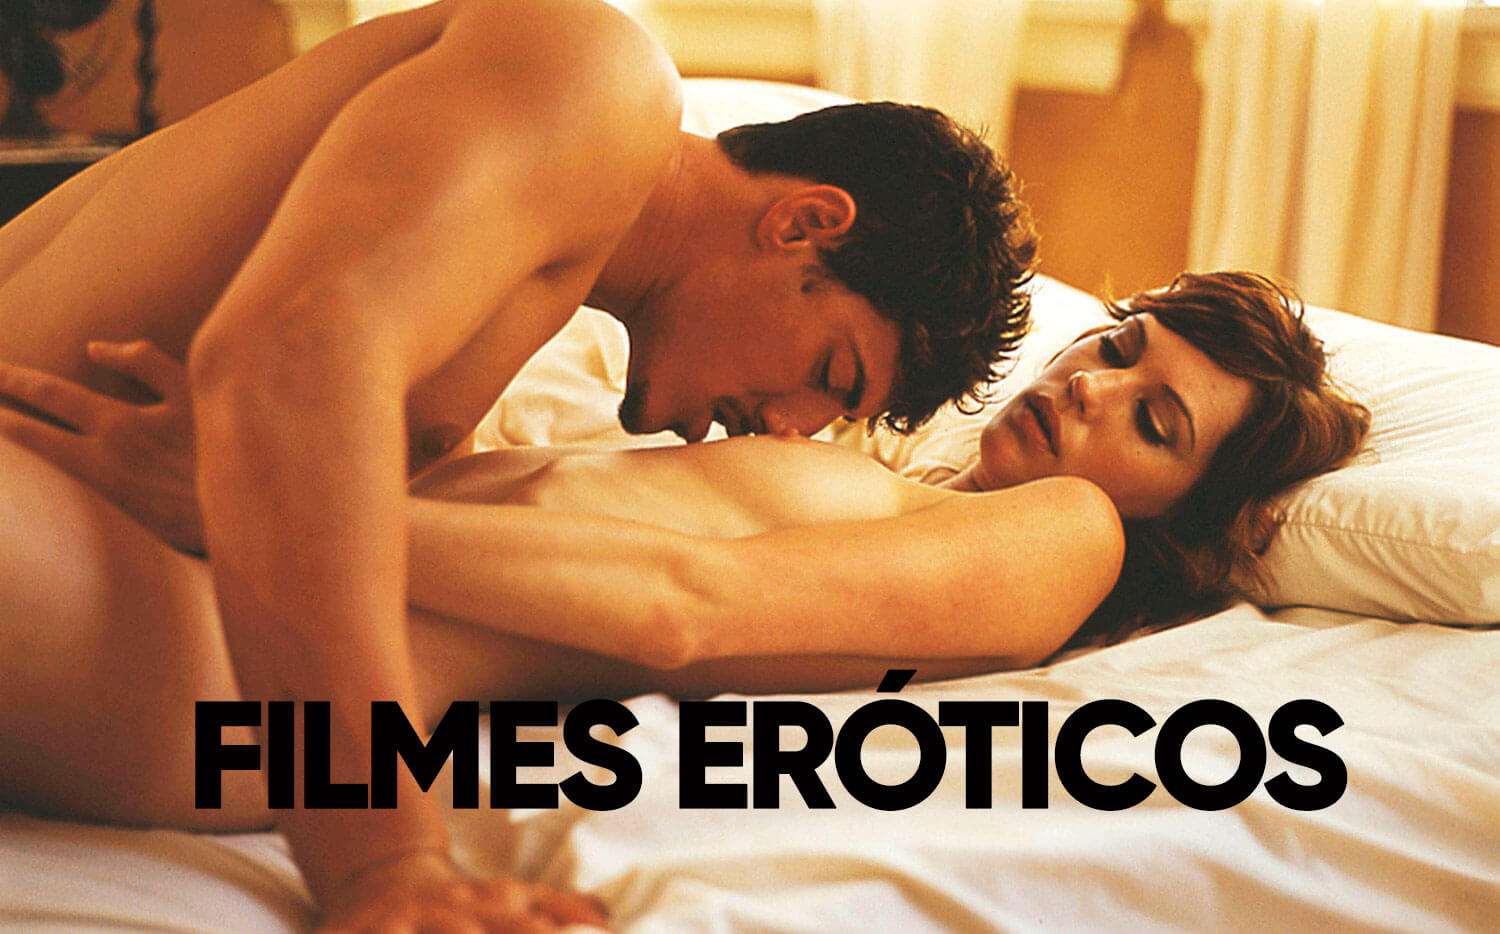 Filmes eroticos para mulheres